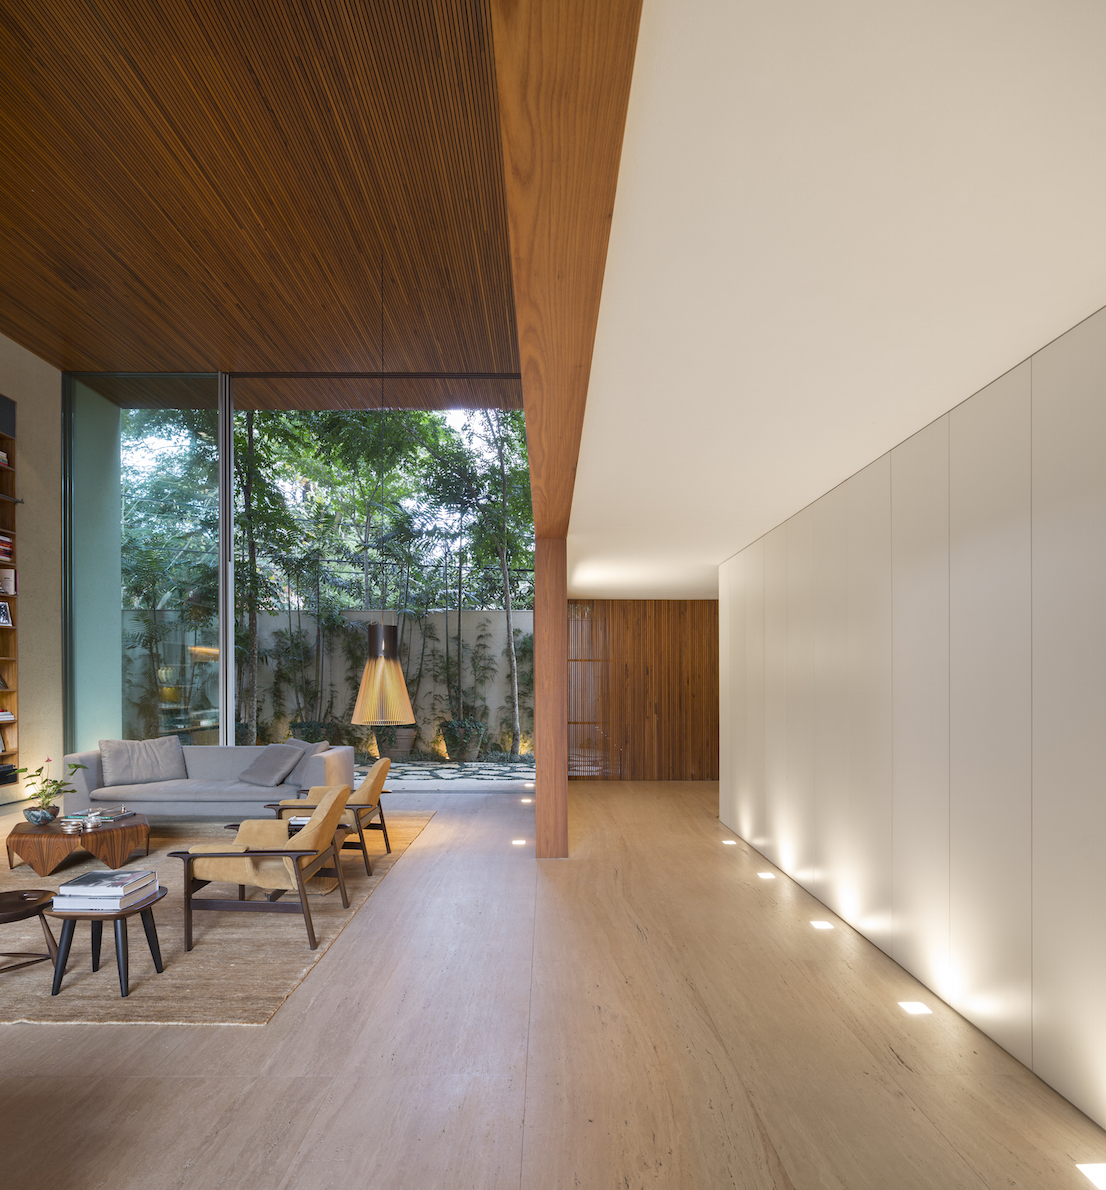 Tetris House, una splendida residenza situata nel cuore di San Paolo, progettata dallo studio brasiliano MK27.